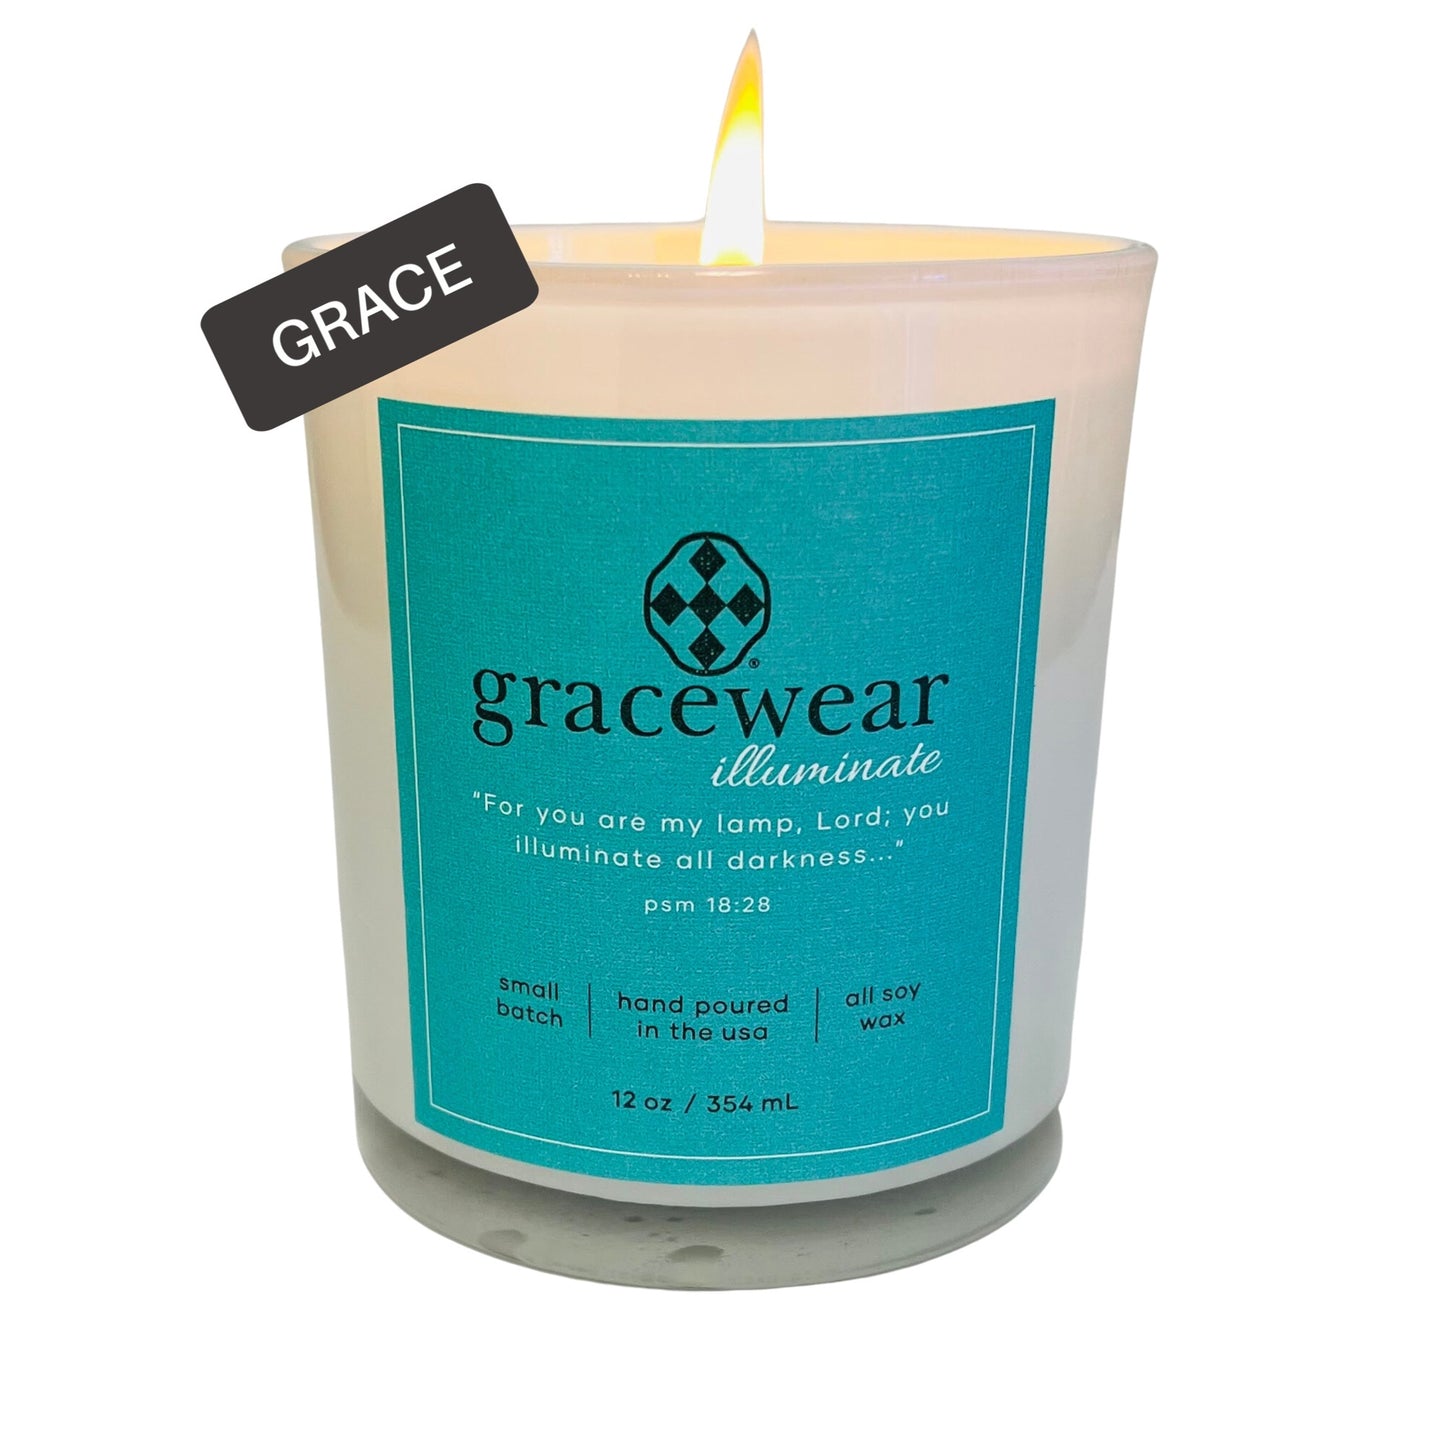 Gracewear Illuminate candle- GRACE